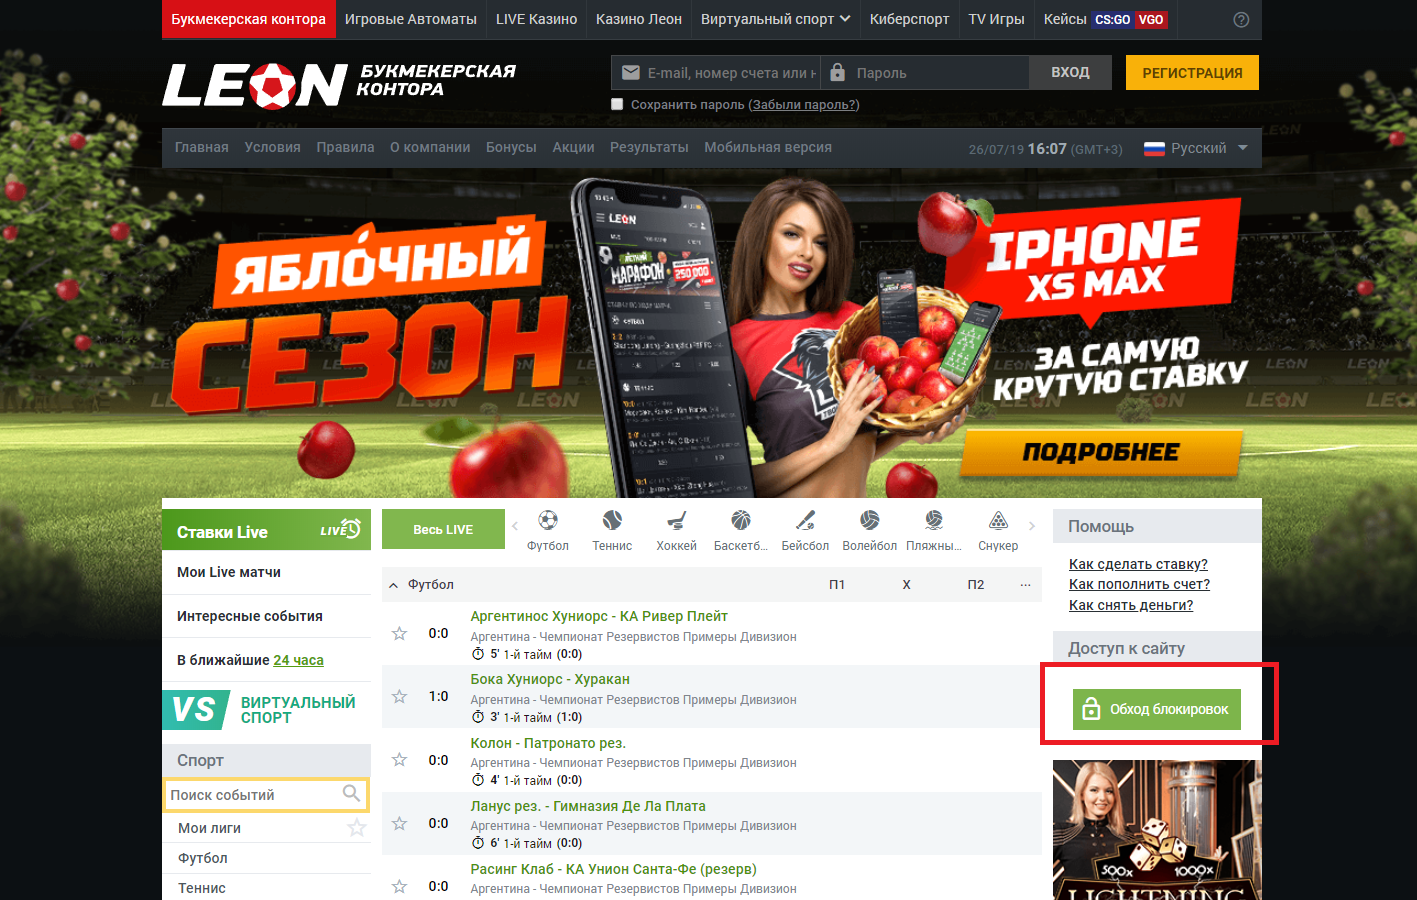 Ставки на спорт онлайн официальный сайт отзывы казино русский вулкан зеркало сайта работающее новое